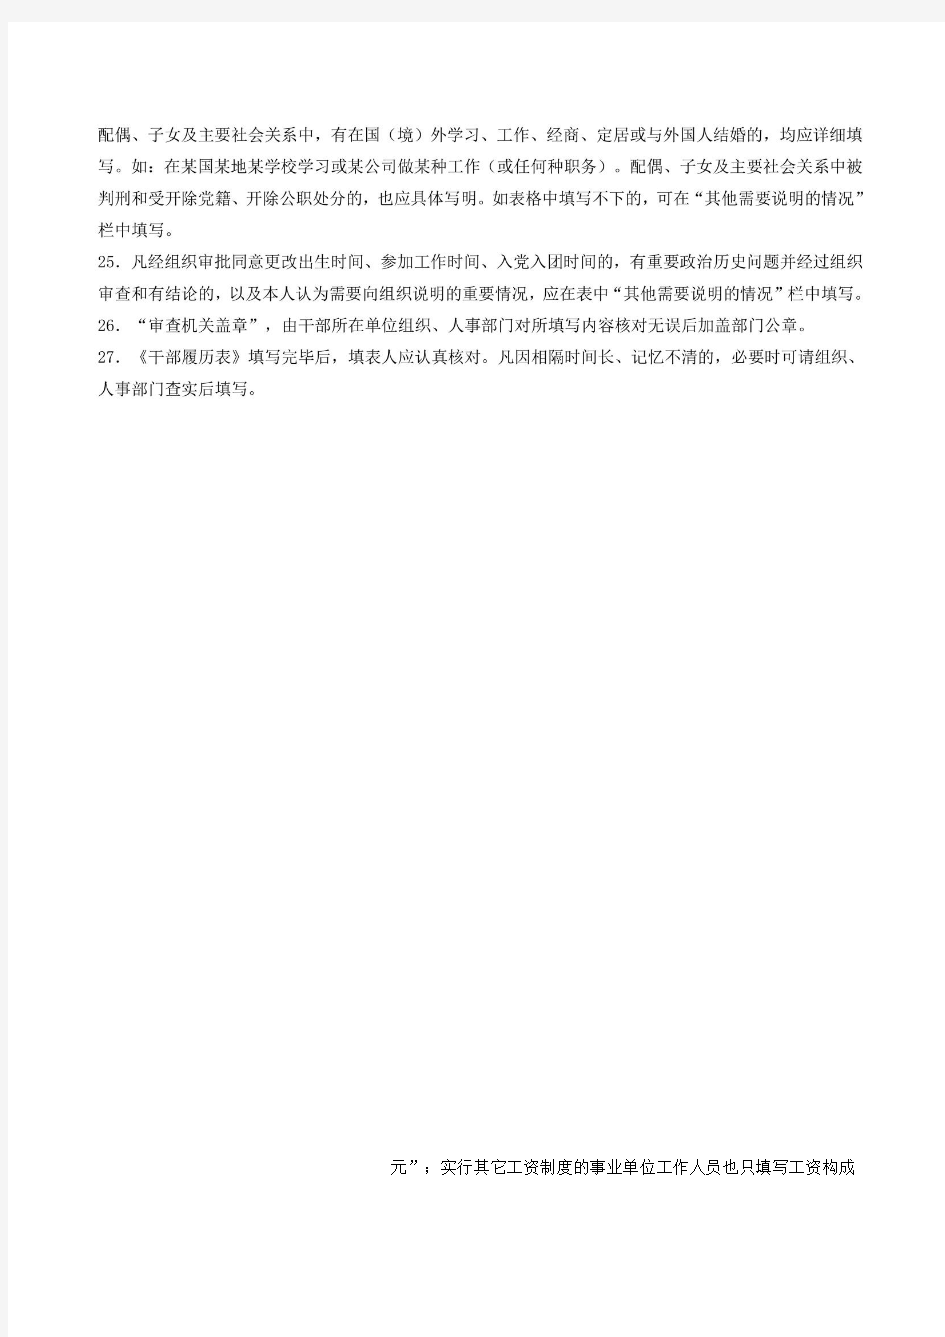 中共中央组织部对《干部履历表》的填表说明201012281743743